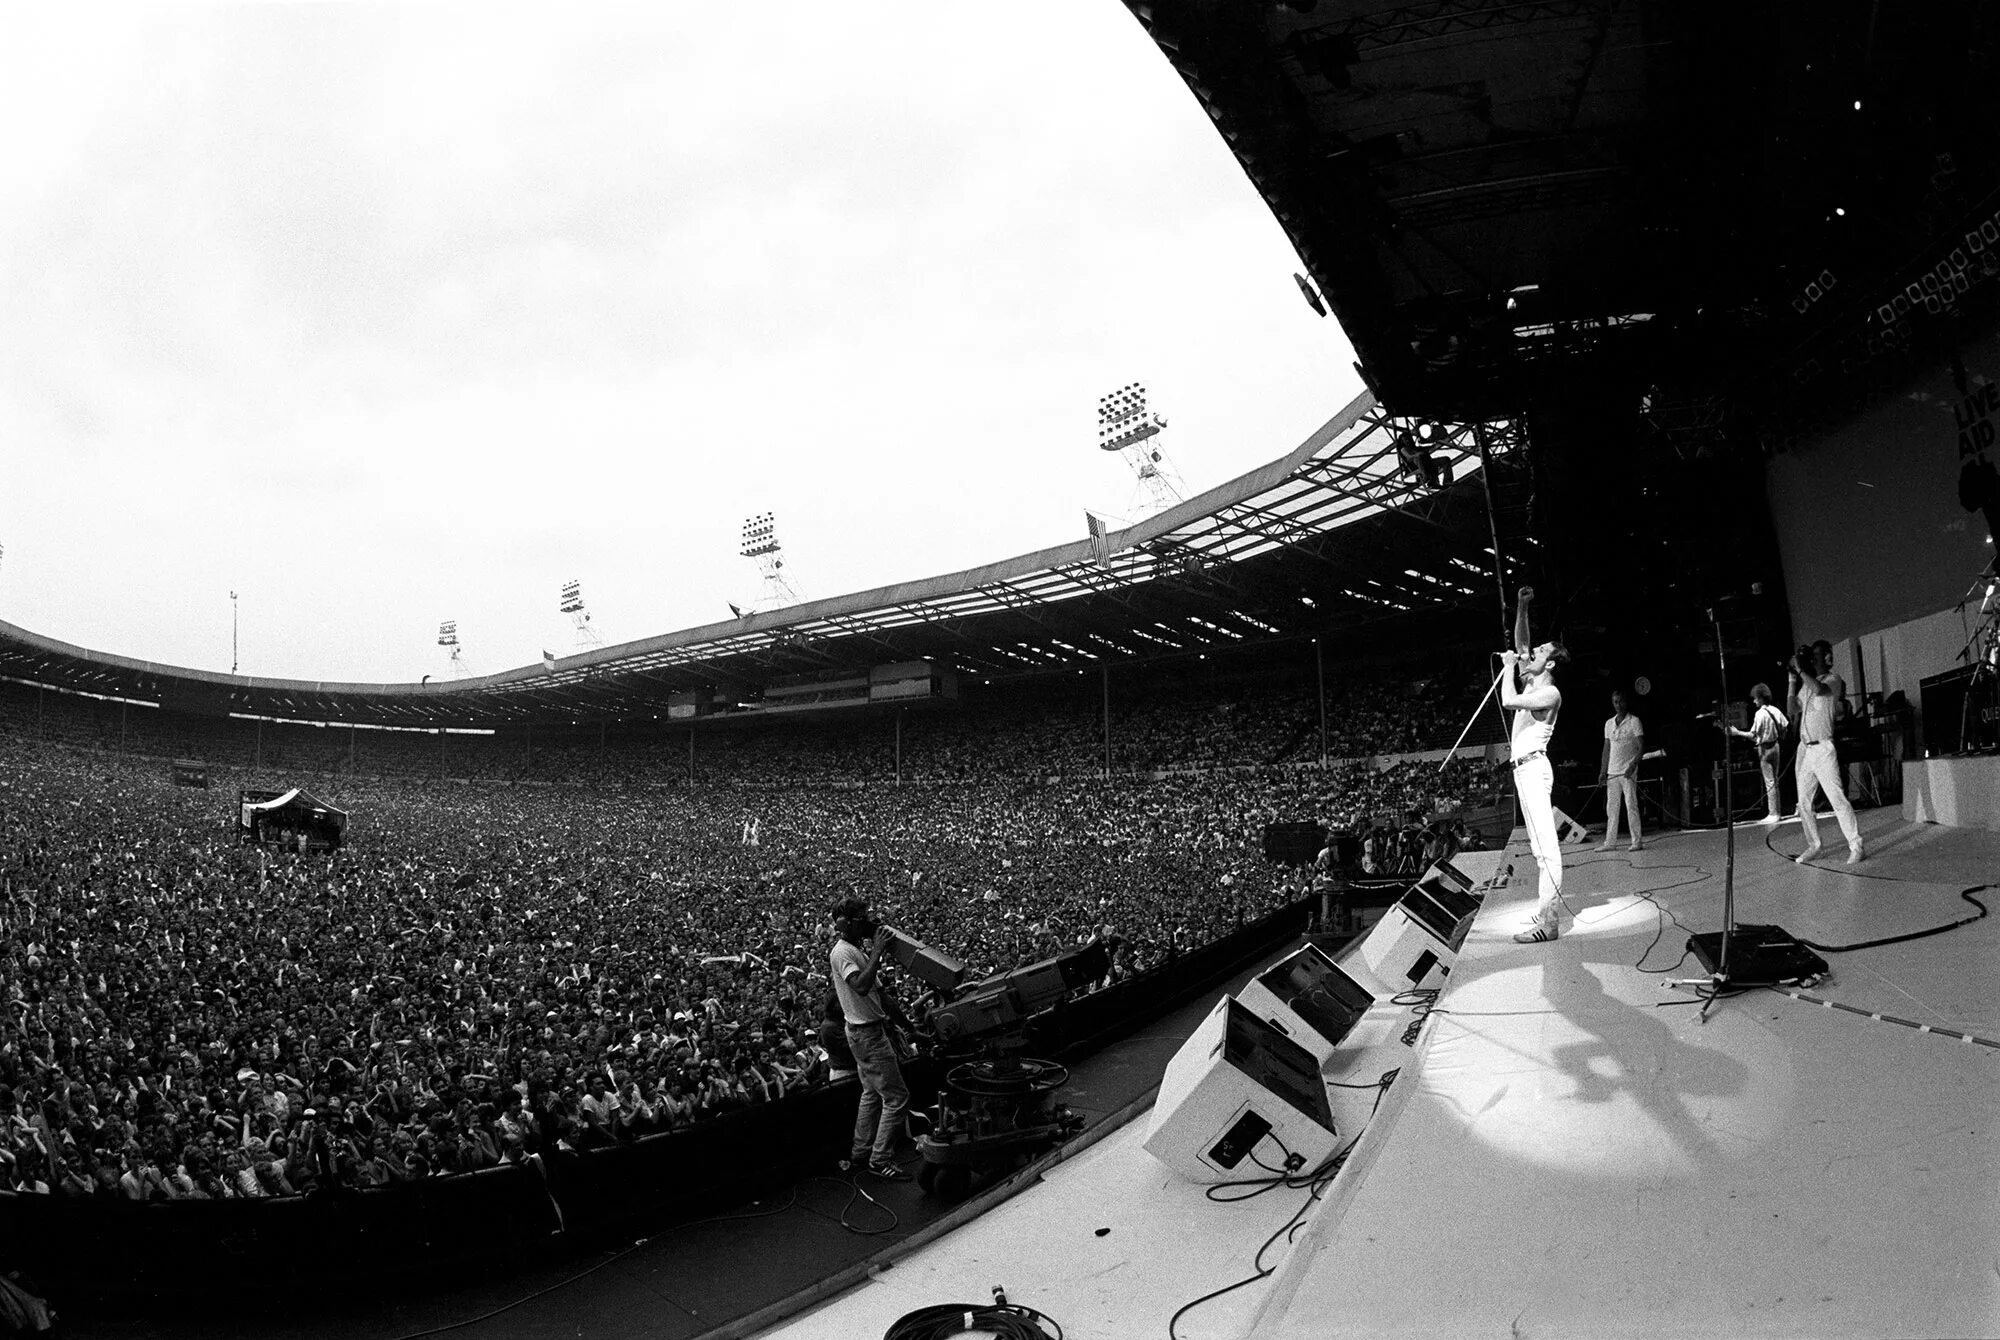 Концерт квин на стадионе. Концерт Фредди Меркьюри на стадионе Уэмбли в 1986. Фредди Меркьюри на стадионе Уэмбли 1985. Концерт Квин Уэмбли 1985. Концерт Фредди Меркьюри на стадионе Уэмбли.